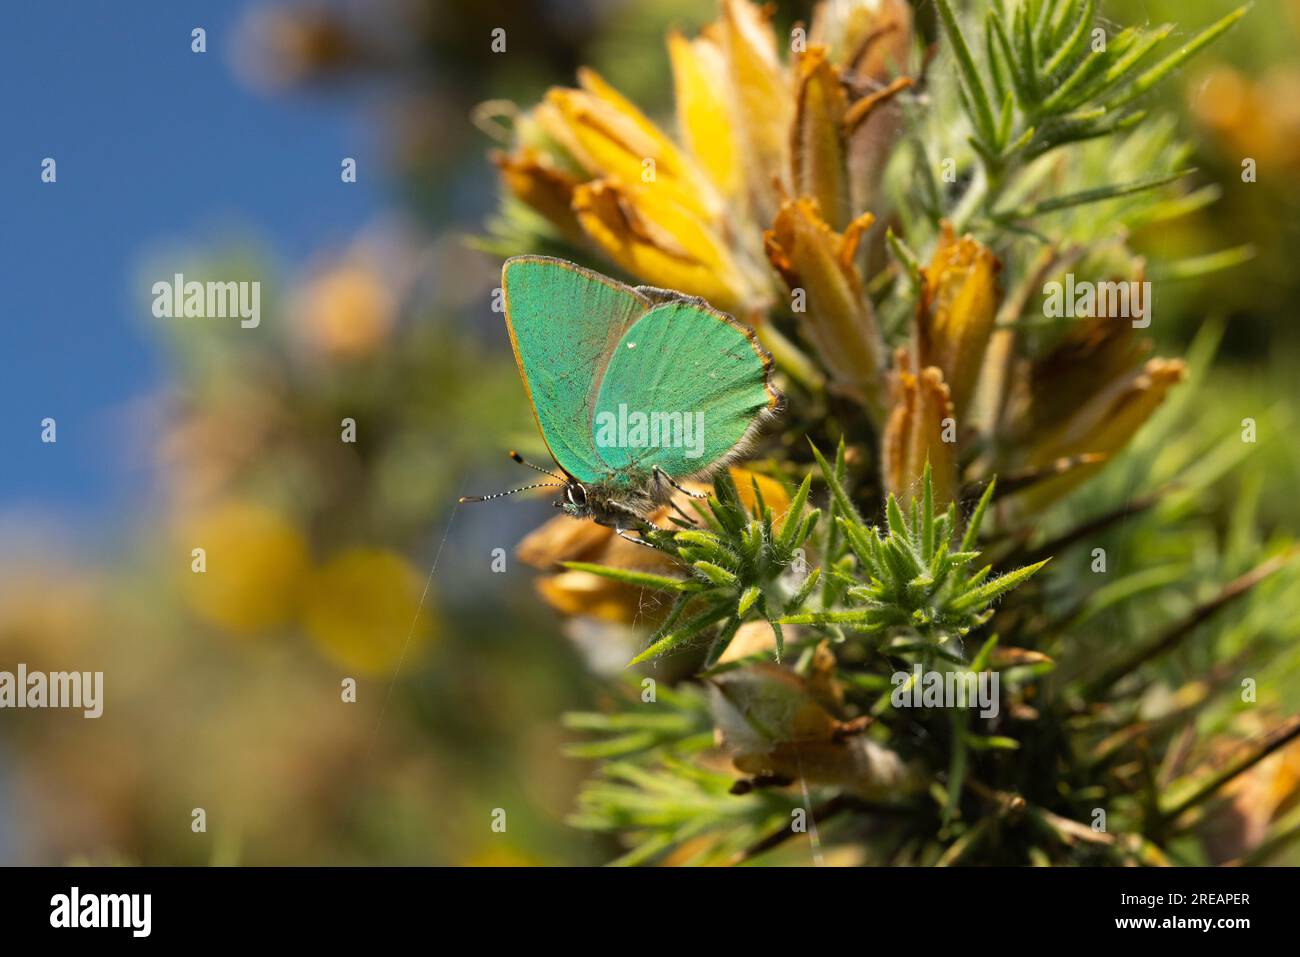 Grüner Haarstreifen Callophrys rubi, Imago sonkt sich auf Common Gorse Ulex europaeus, Exmoor National Park, Somerset, Großbritannien, Mai Stockfoto